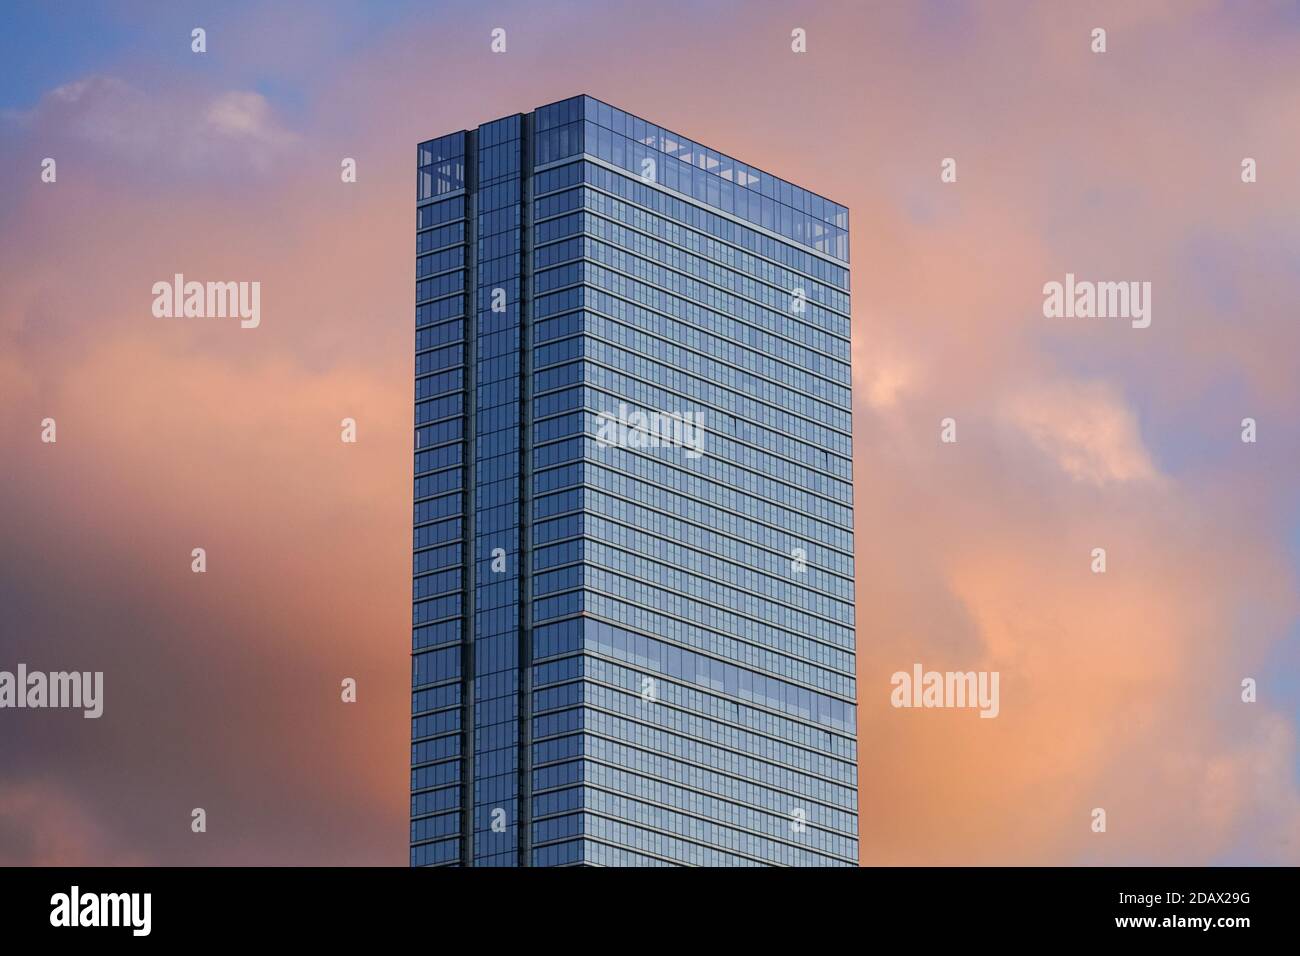 Landmark Pinnacle nuovo moderno grattacielo appartamento, il più alto edificio residenziale in Europa, sull'Isola dei Dogs, Londra, Inghilterra Regno Unito Foto Stock